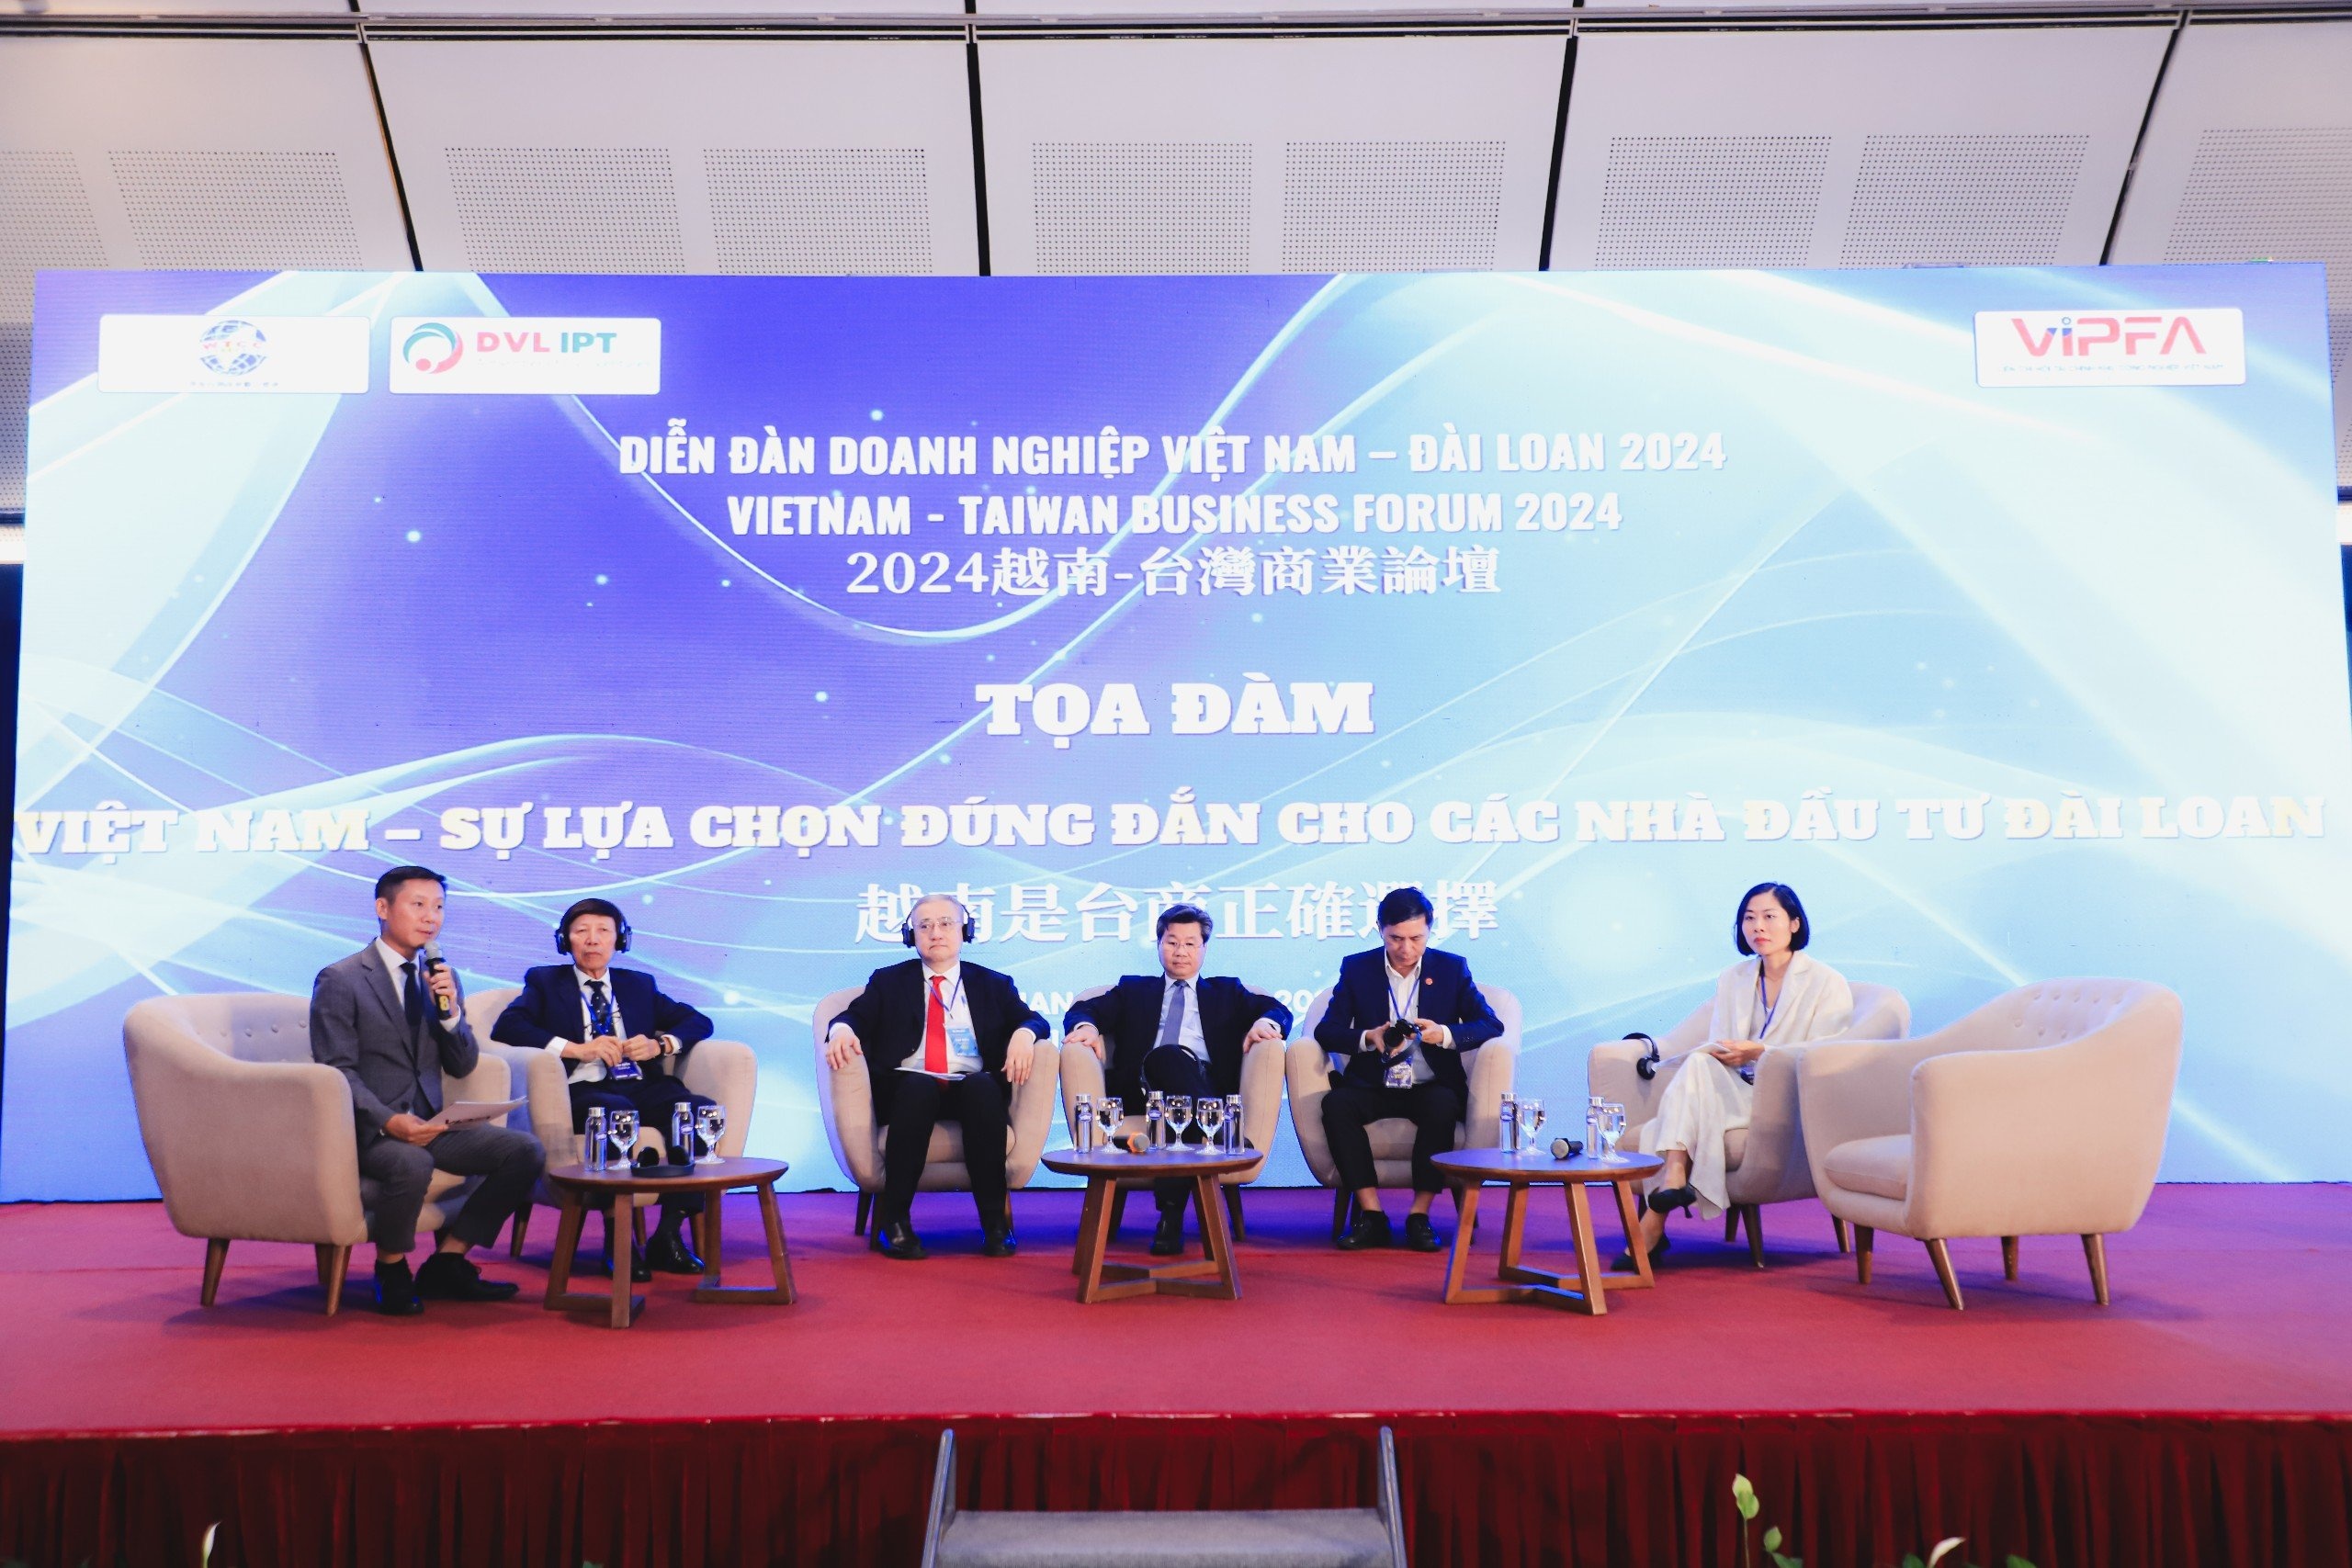 Kỳ vọng làn sóng đầu tư mới của Đài Loan vào Việt Nam